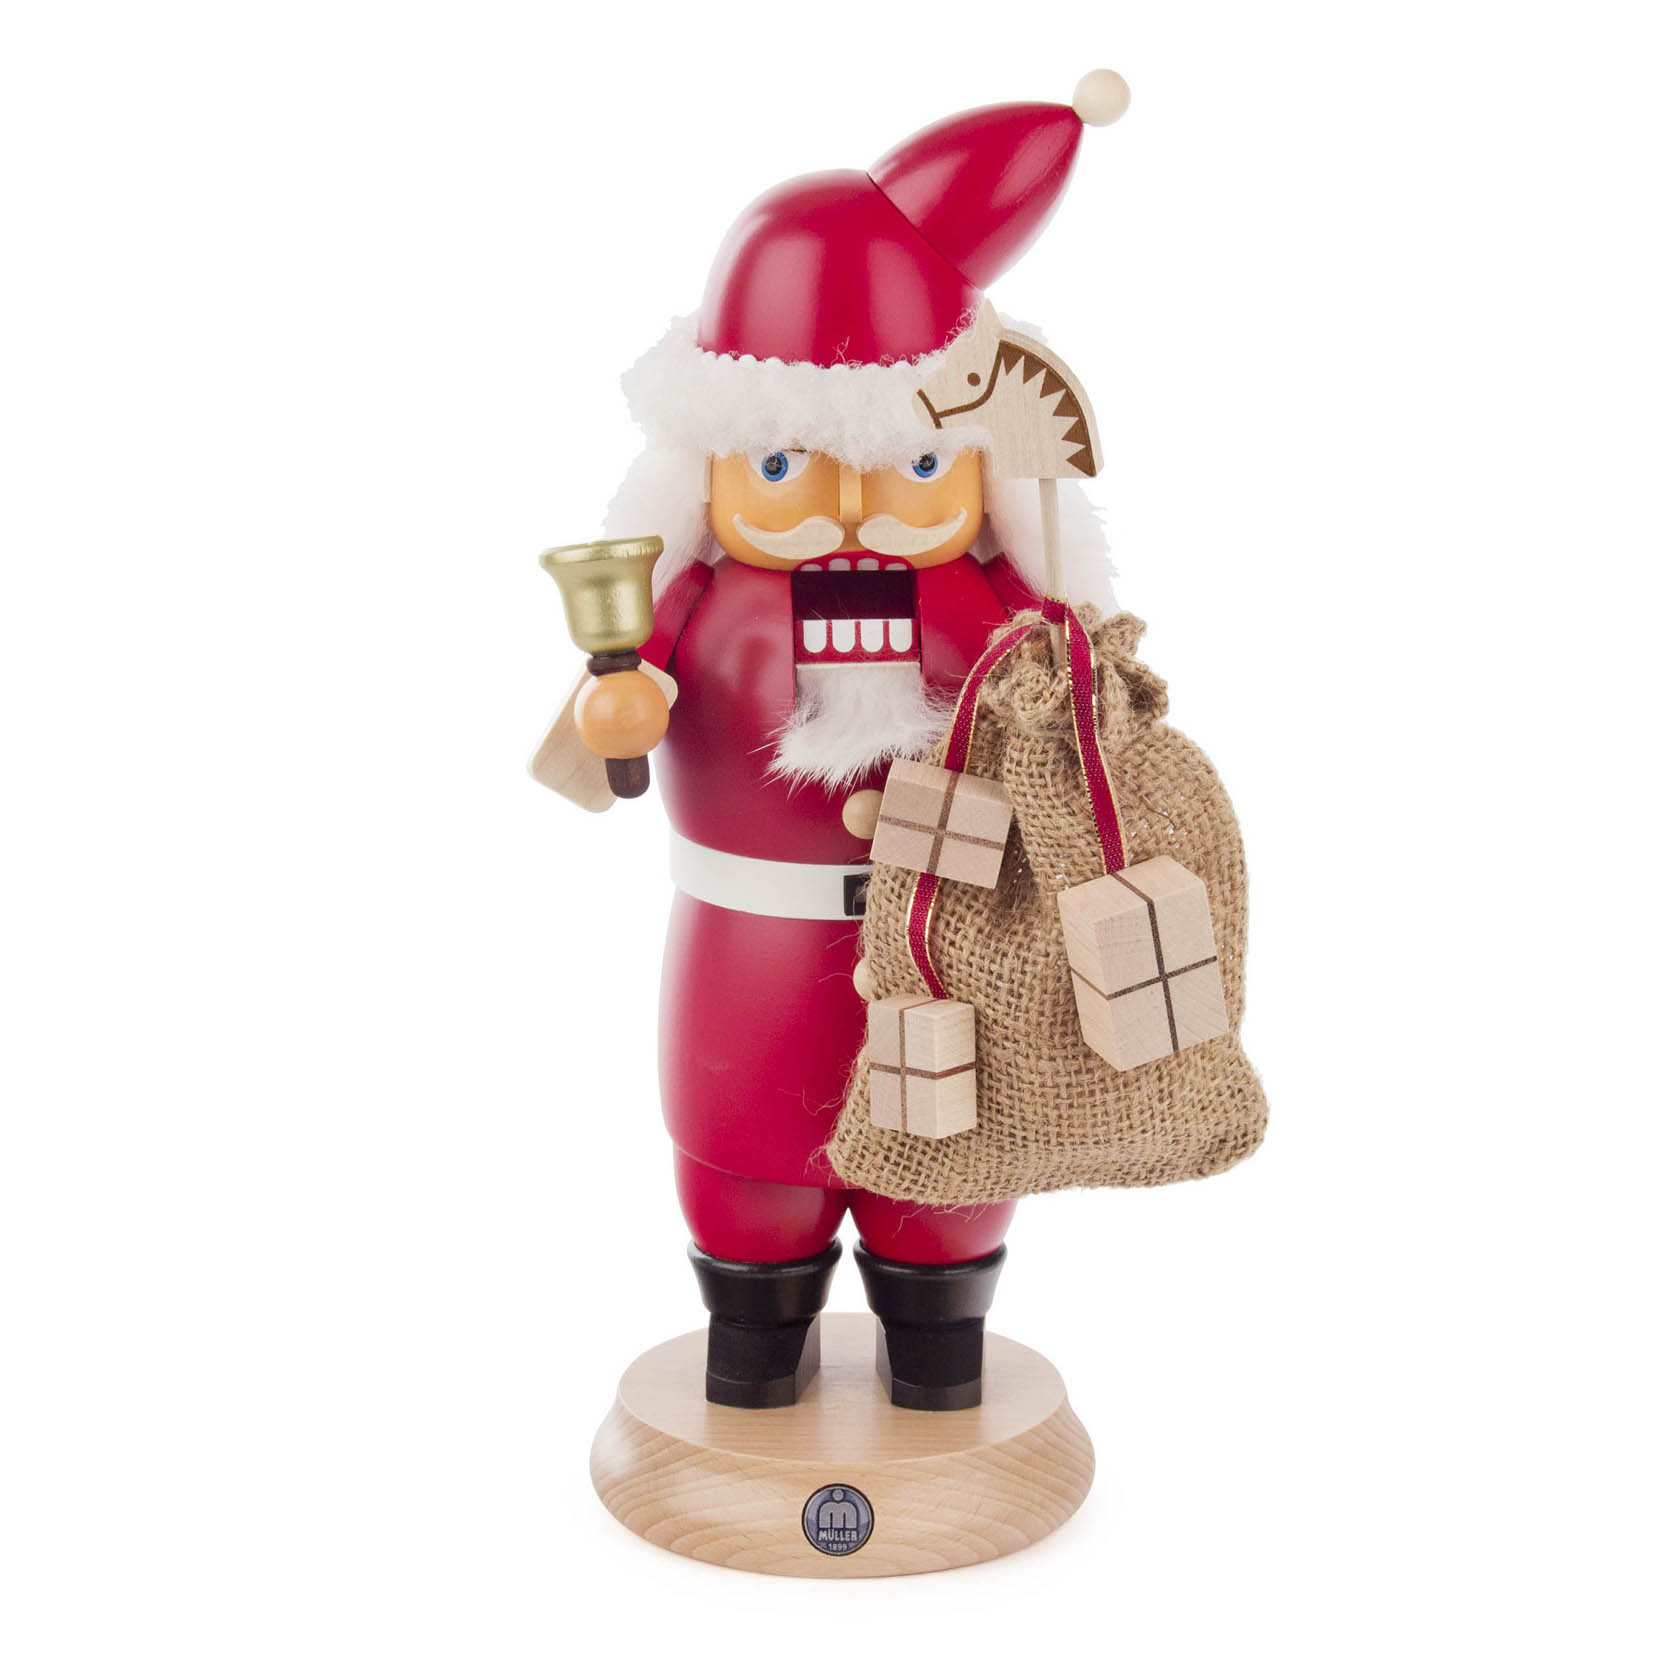 Rauchender Nussknacker "RauchKnacker" Weihnachtsmann mit Glocke und Sack  im Dregeno Online Shop günstig kaufen